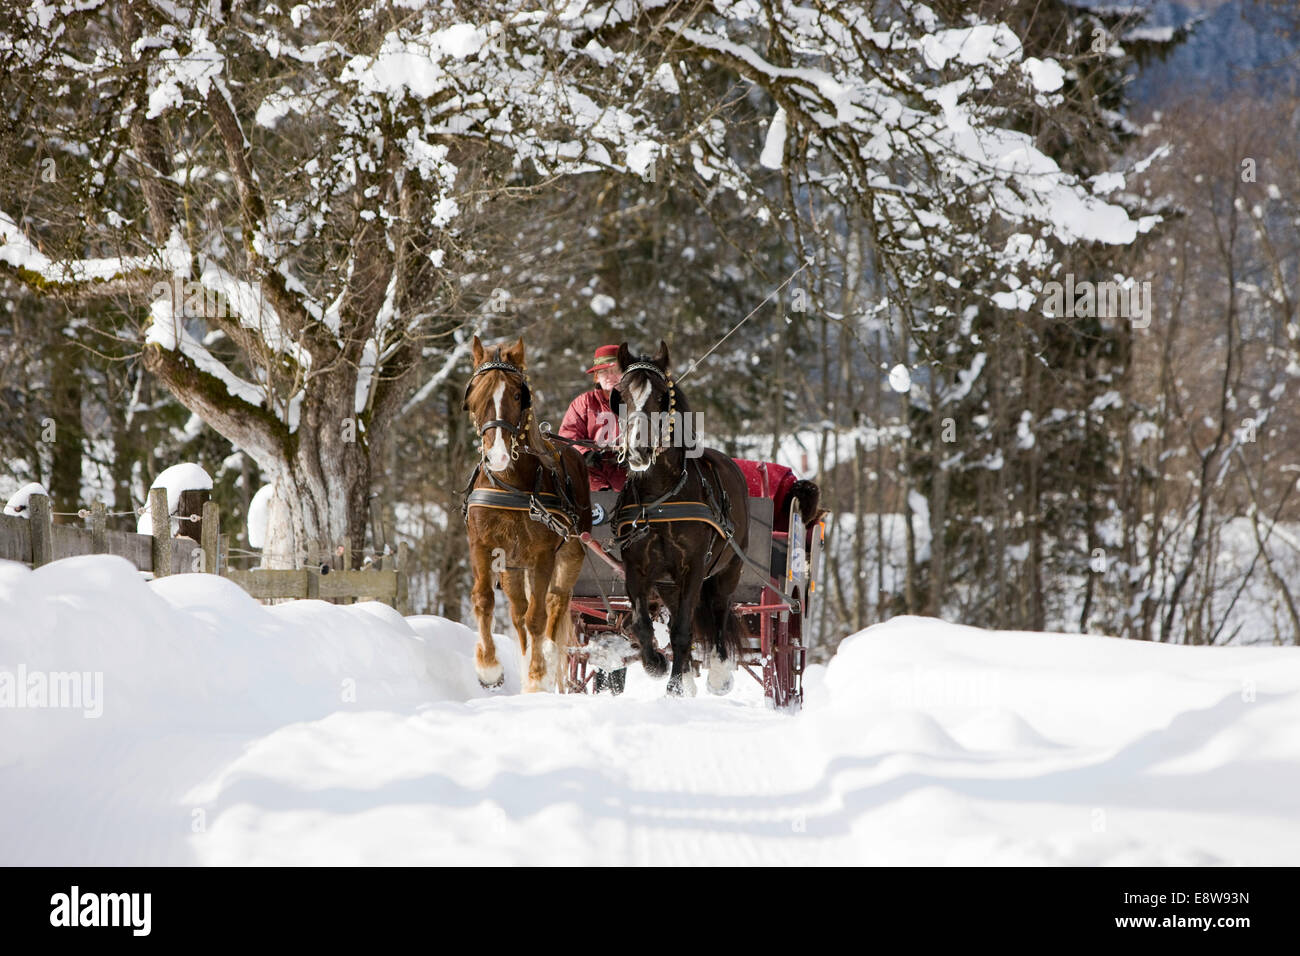 Poneys Gallois avec traîneau en hiver, en carriole, Söll, Tyrol, Autriche Banque D'Images